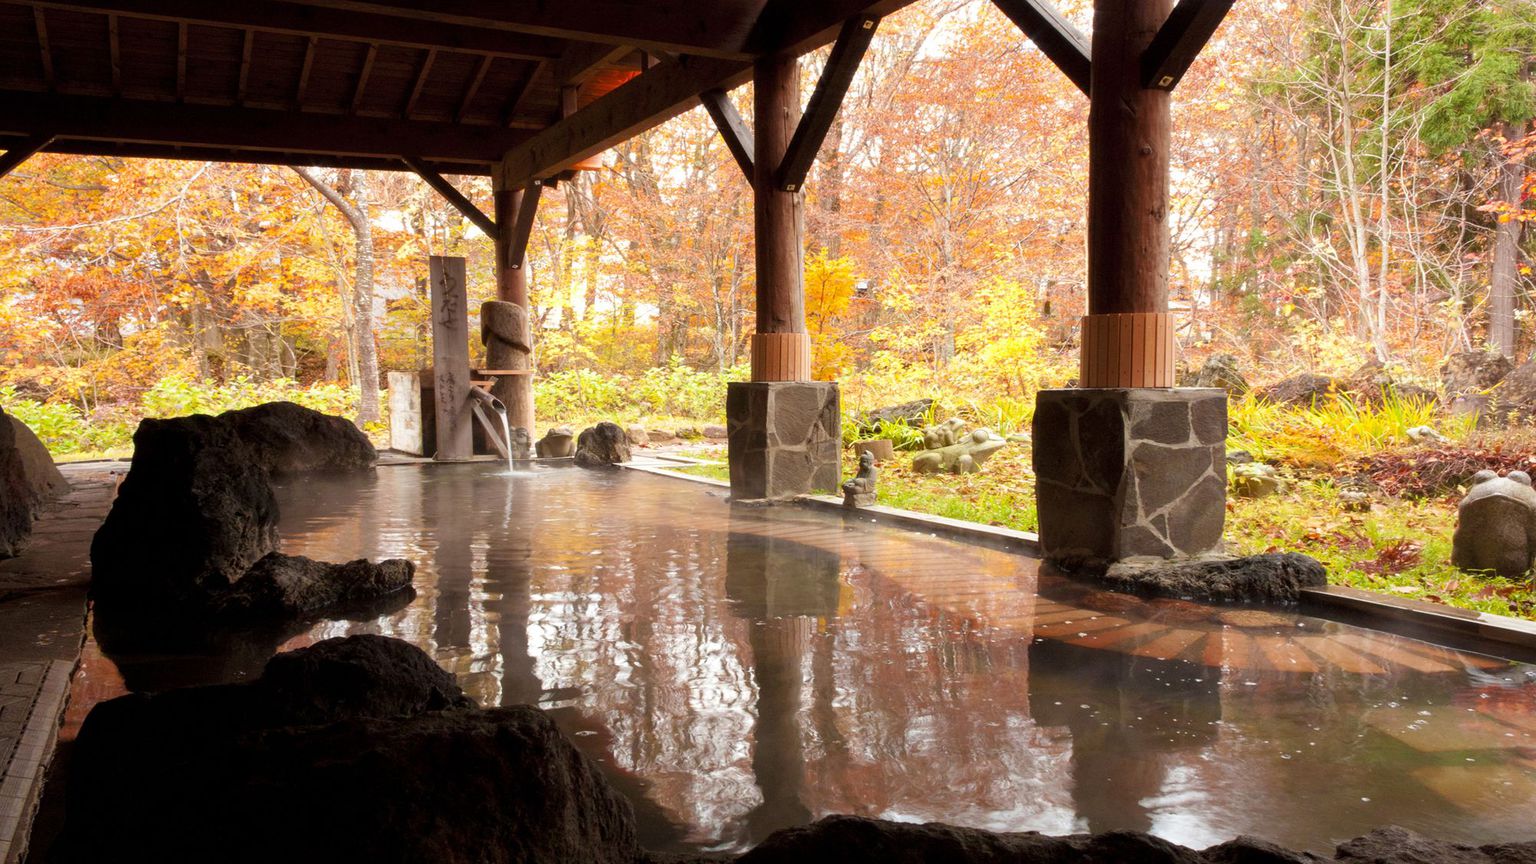 【男湯露天風呂】自然に溶け込んだ雰囲気を楽しむ秋の露天風呂